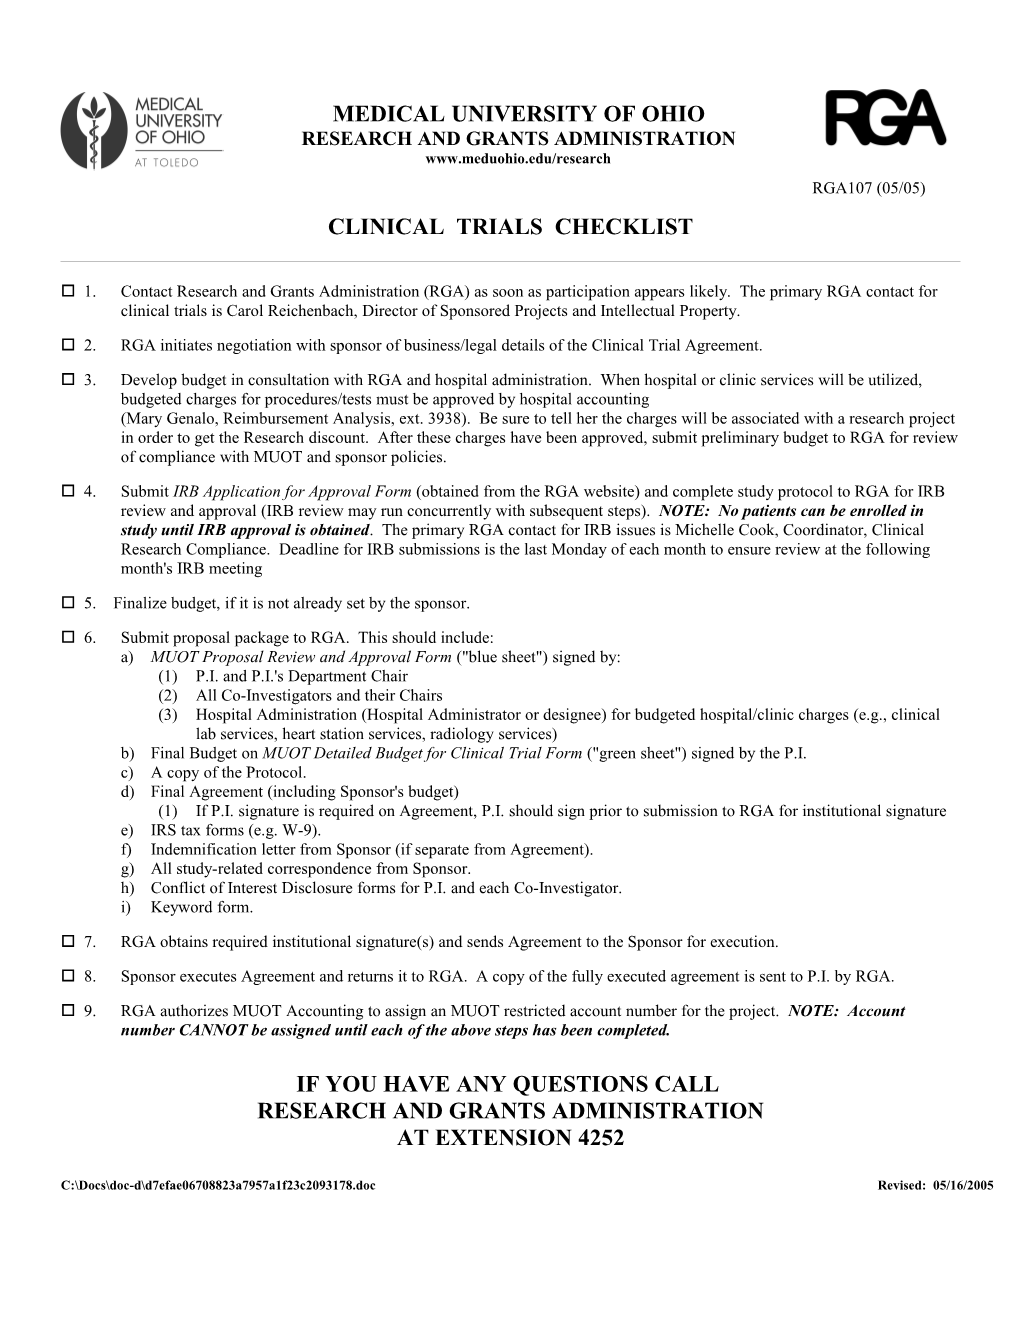 Clinical Trials Checklist